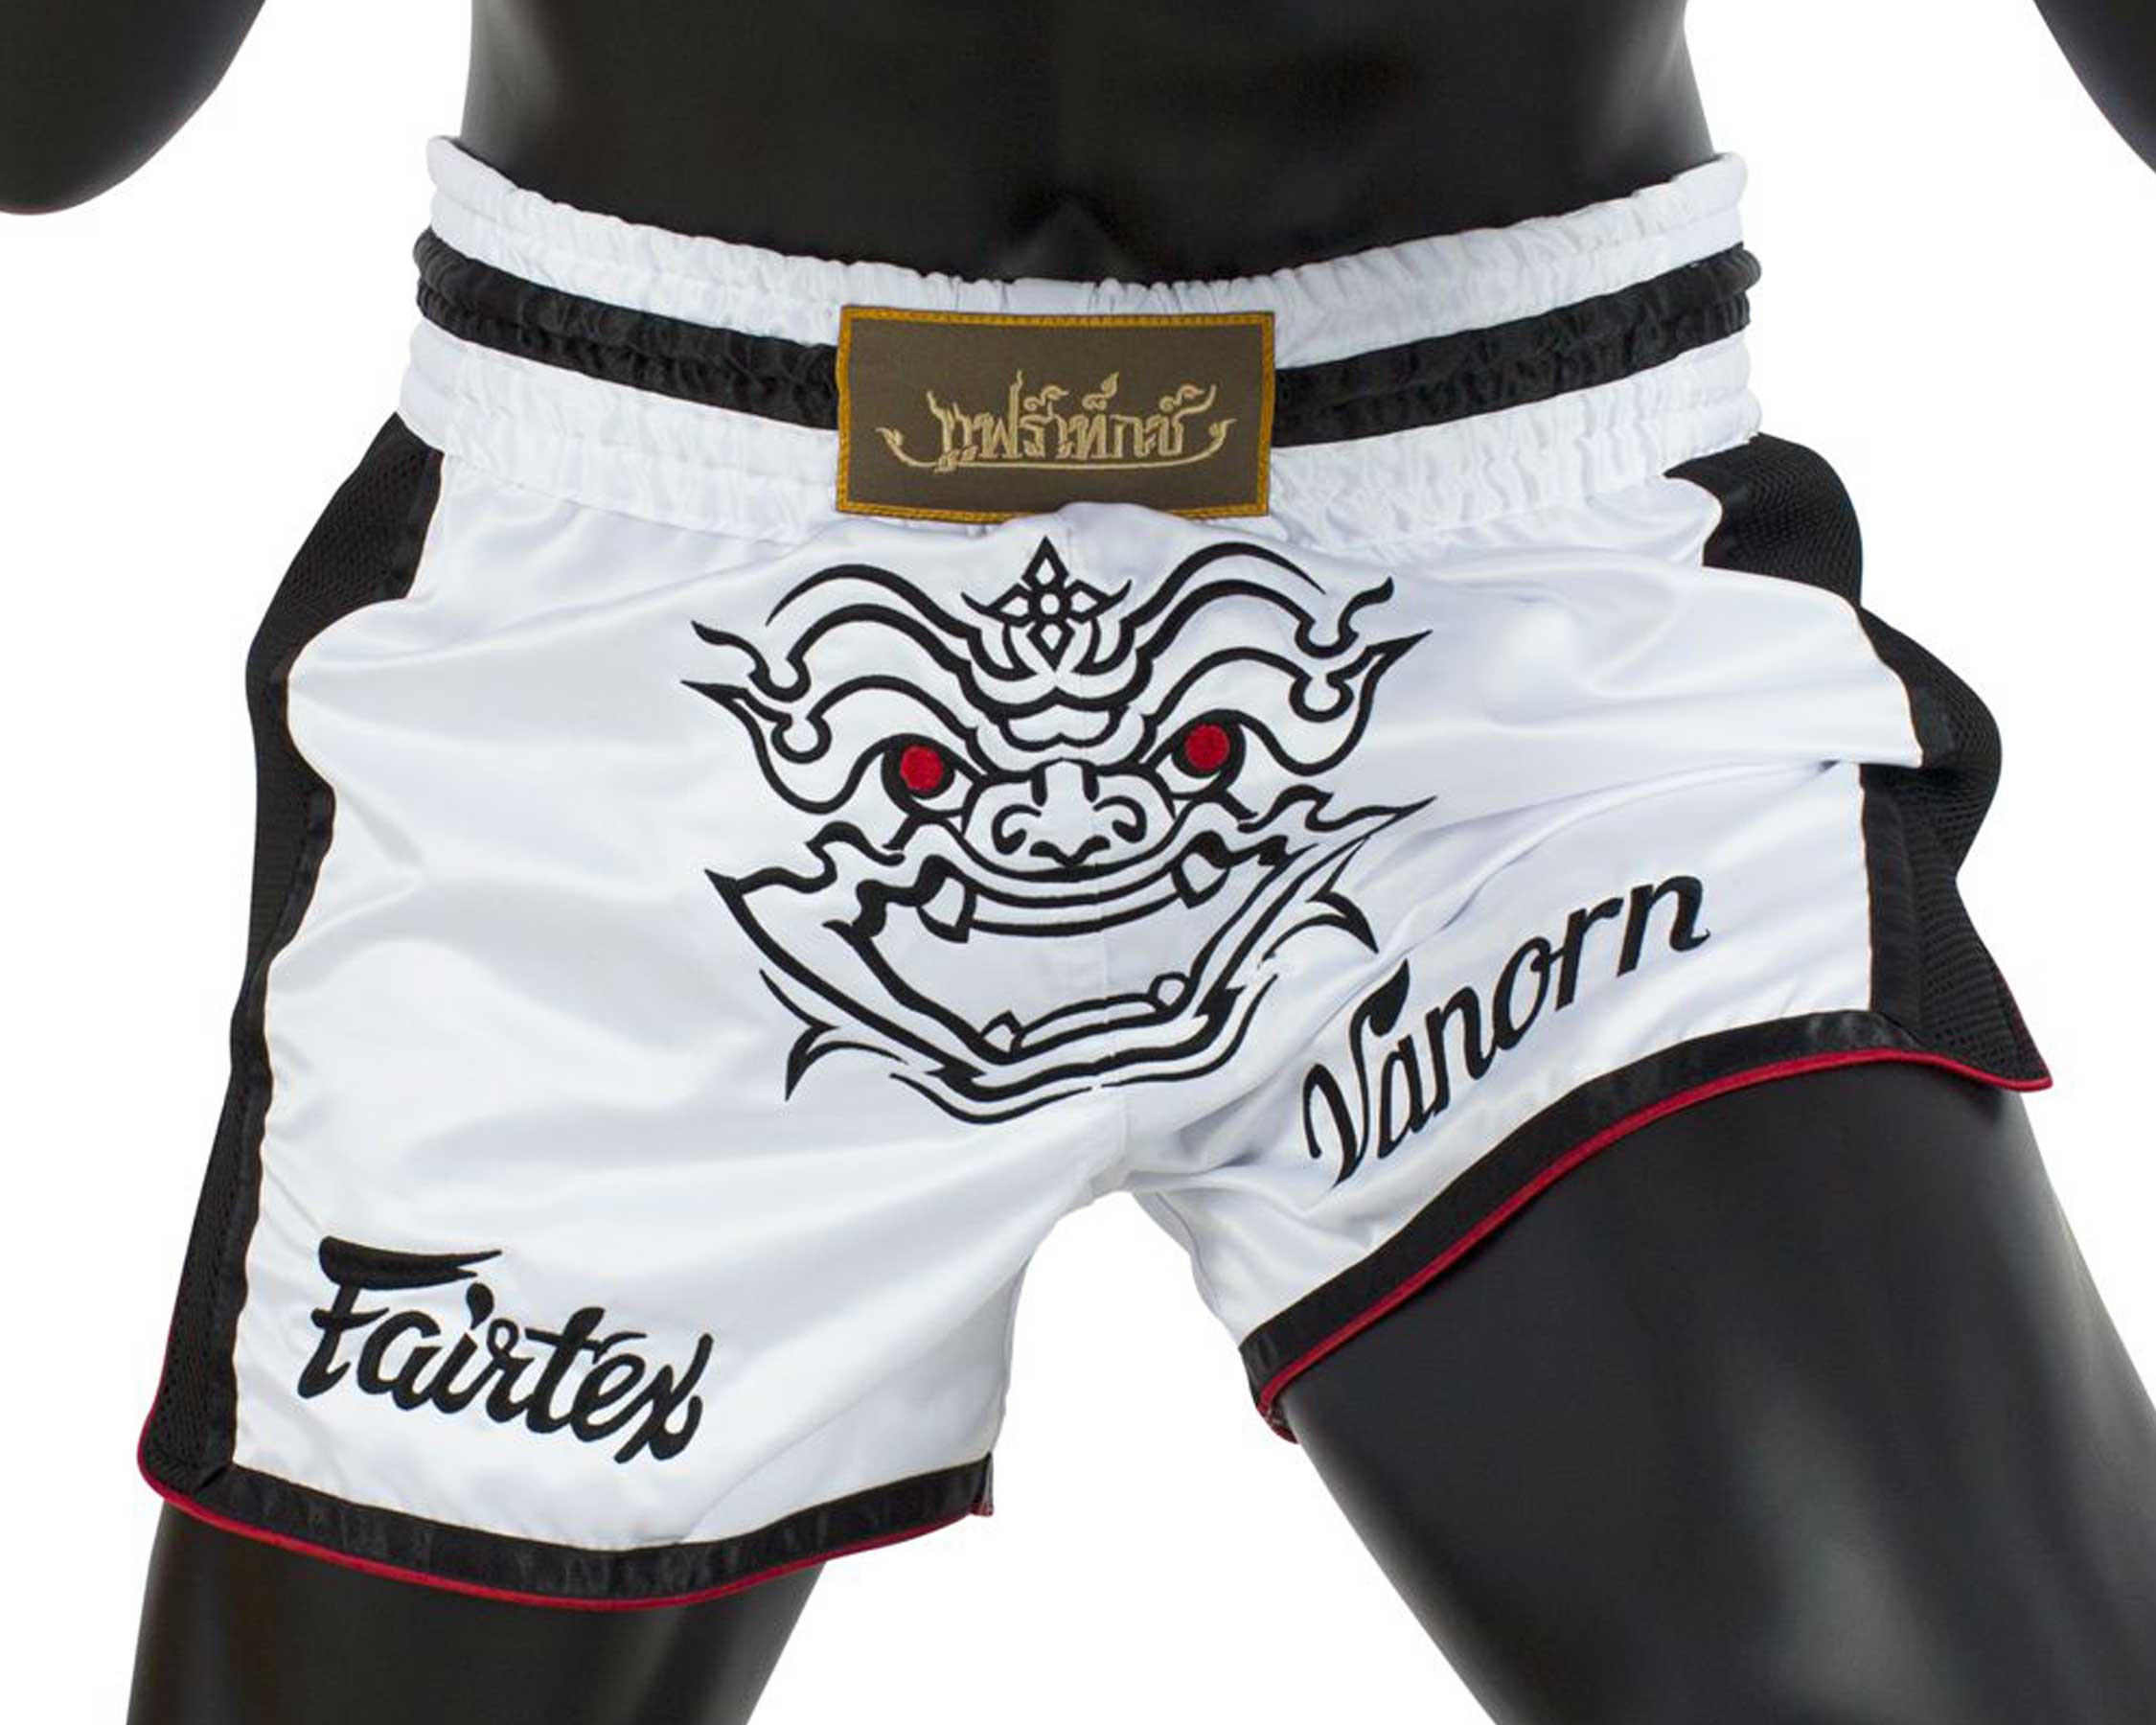 Fairtex BS1712 muay thai shorts Varnon - Boxing trunks and ringwear -  Fairtex, Muay Thai and MMA Shop